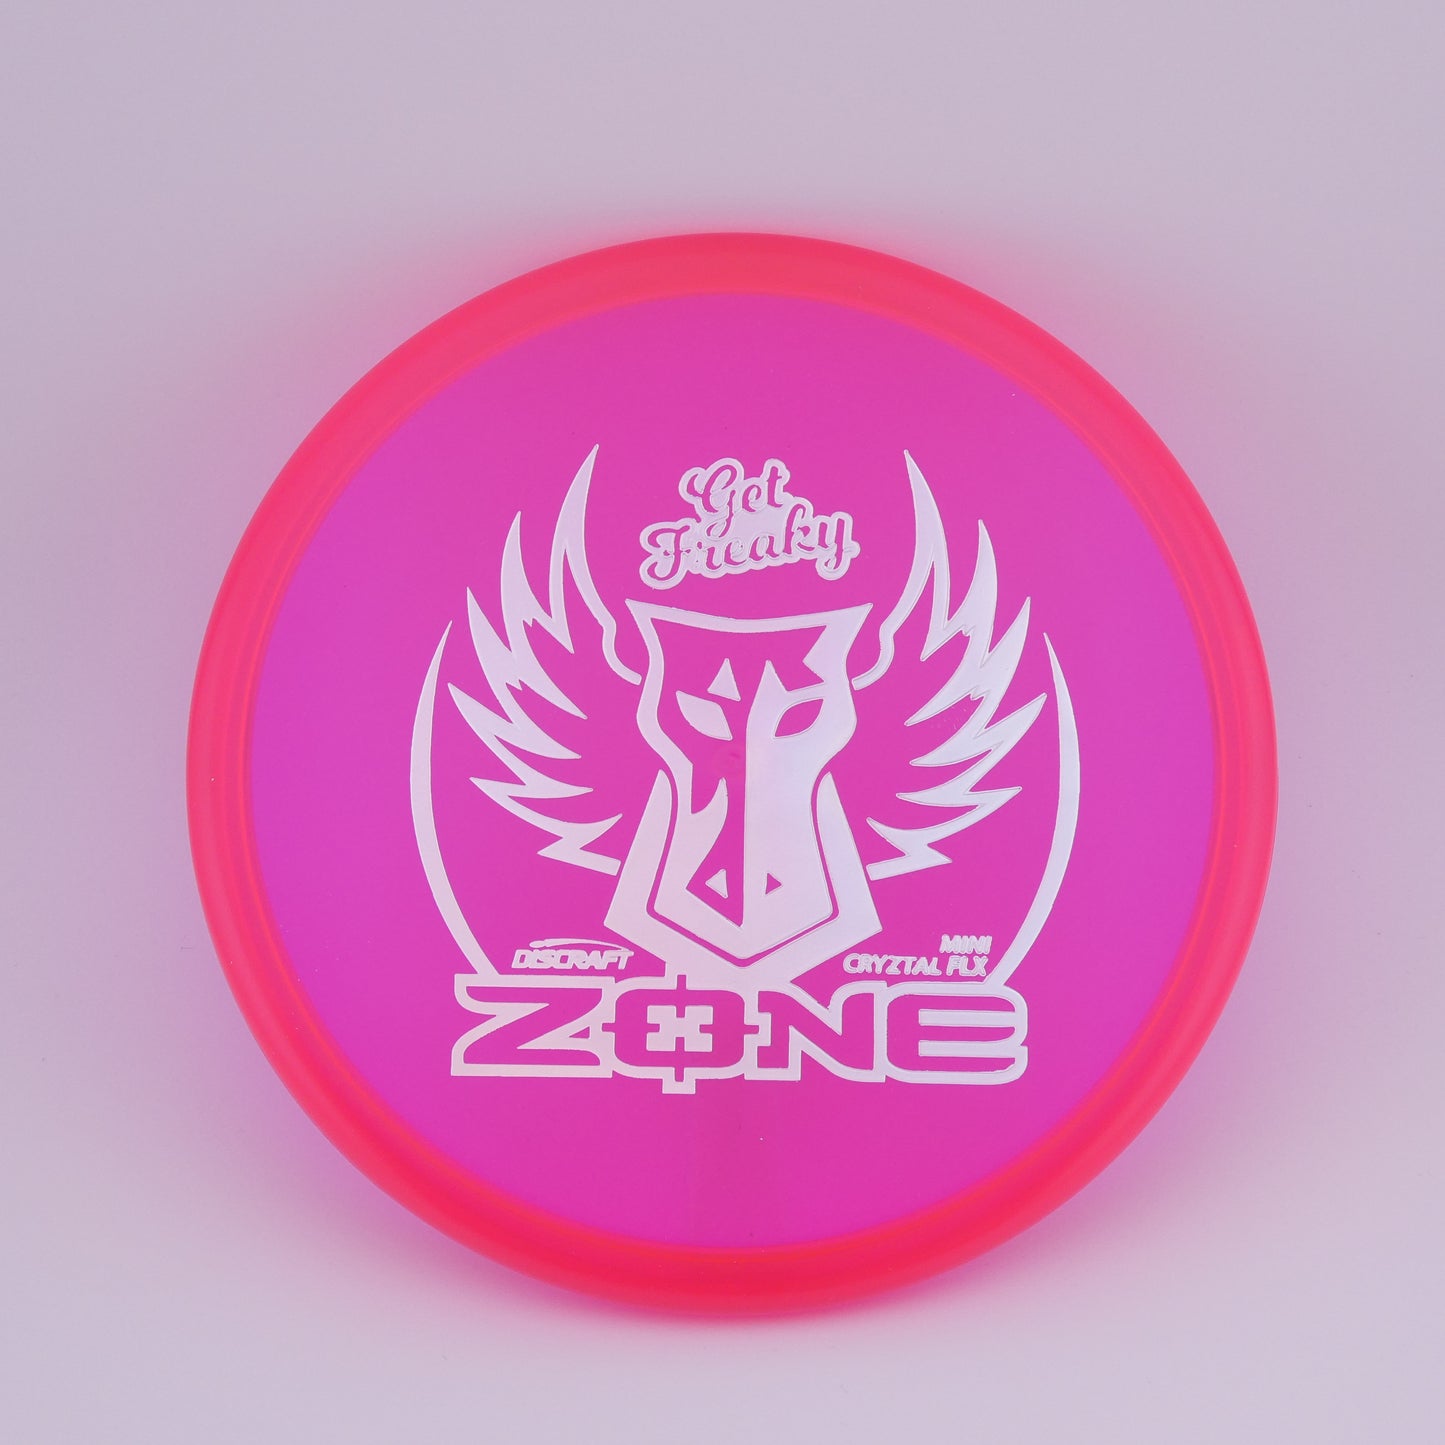 Brodie Smith Cryztal Flx Zone Mini